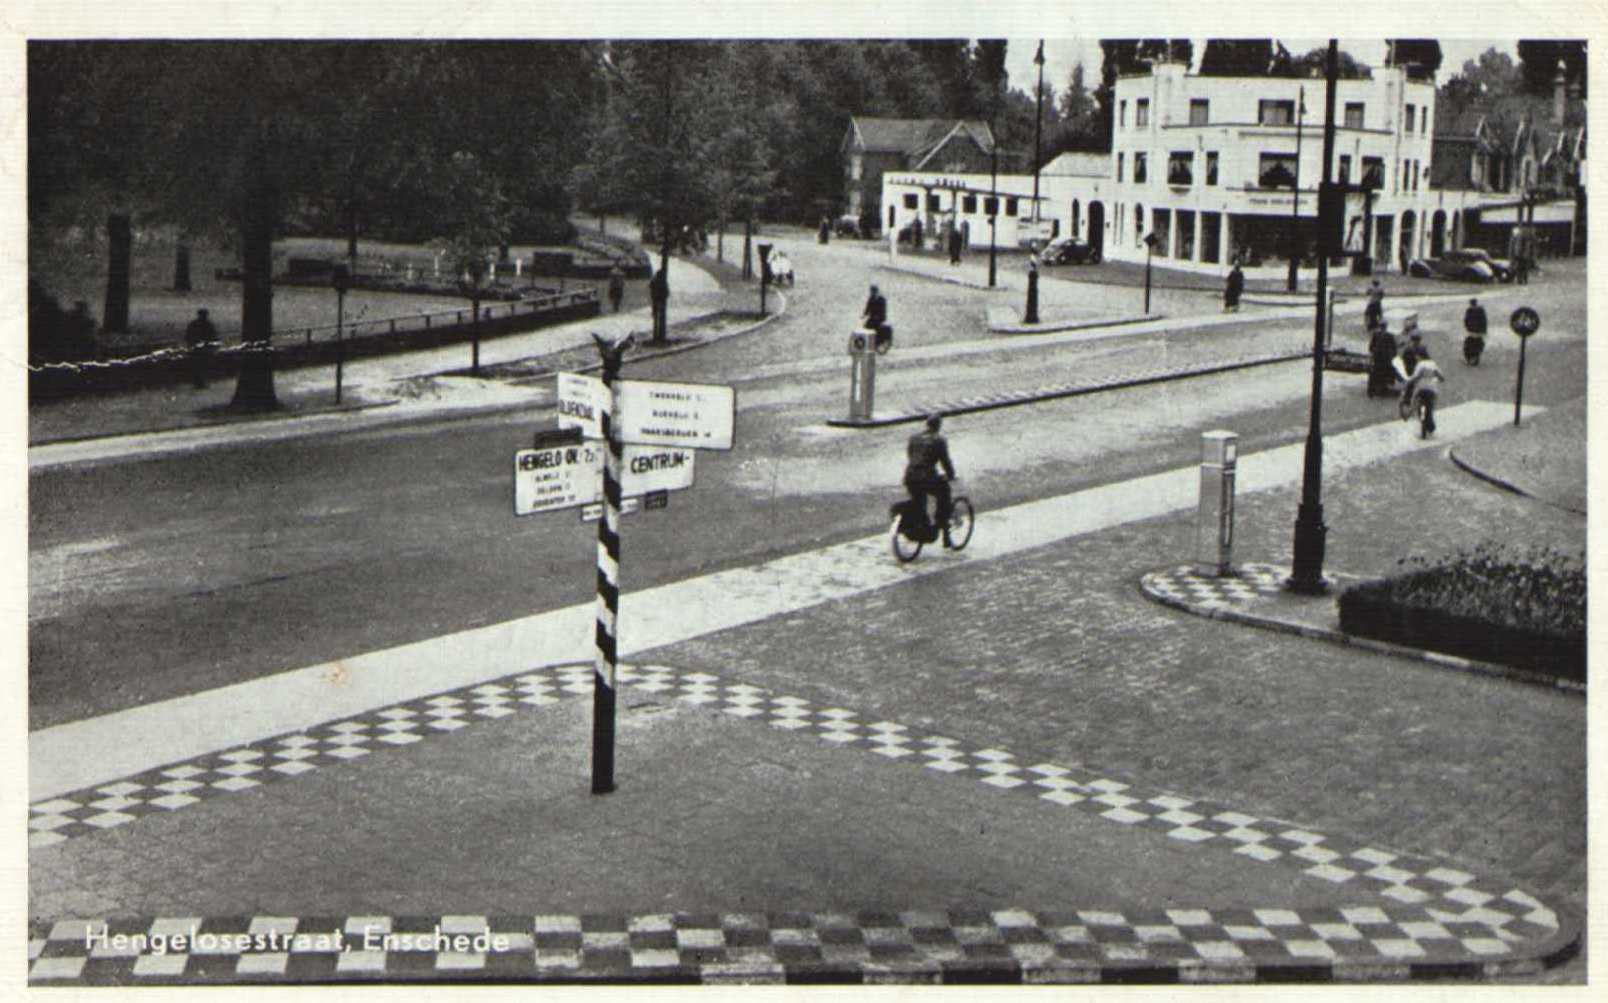 Hengelosestraat-1955-2.jpg